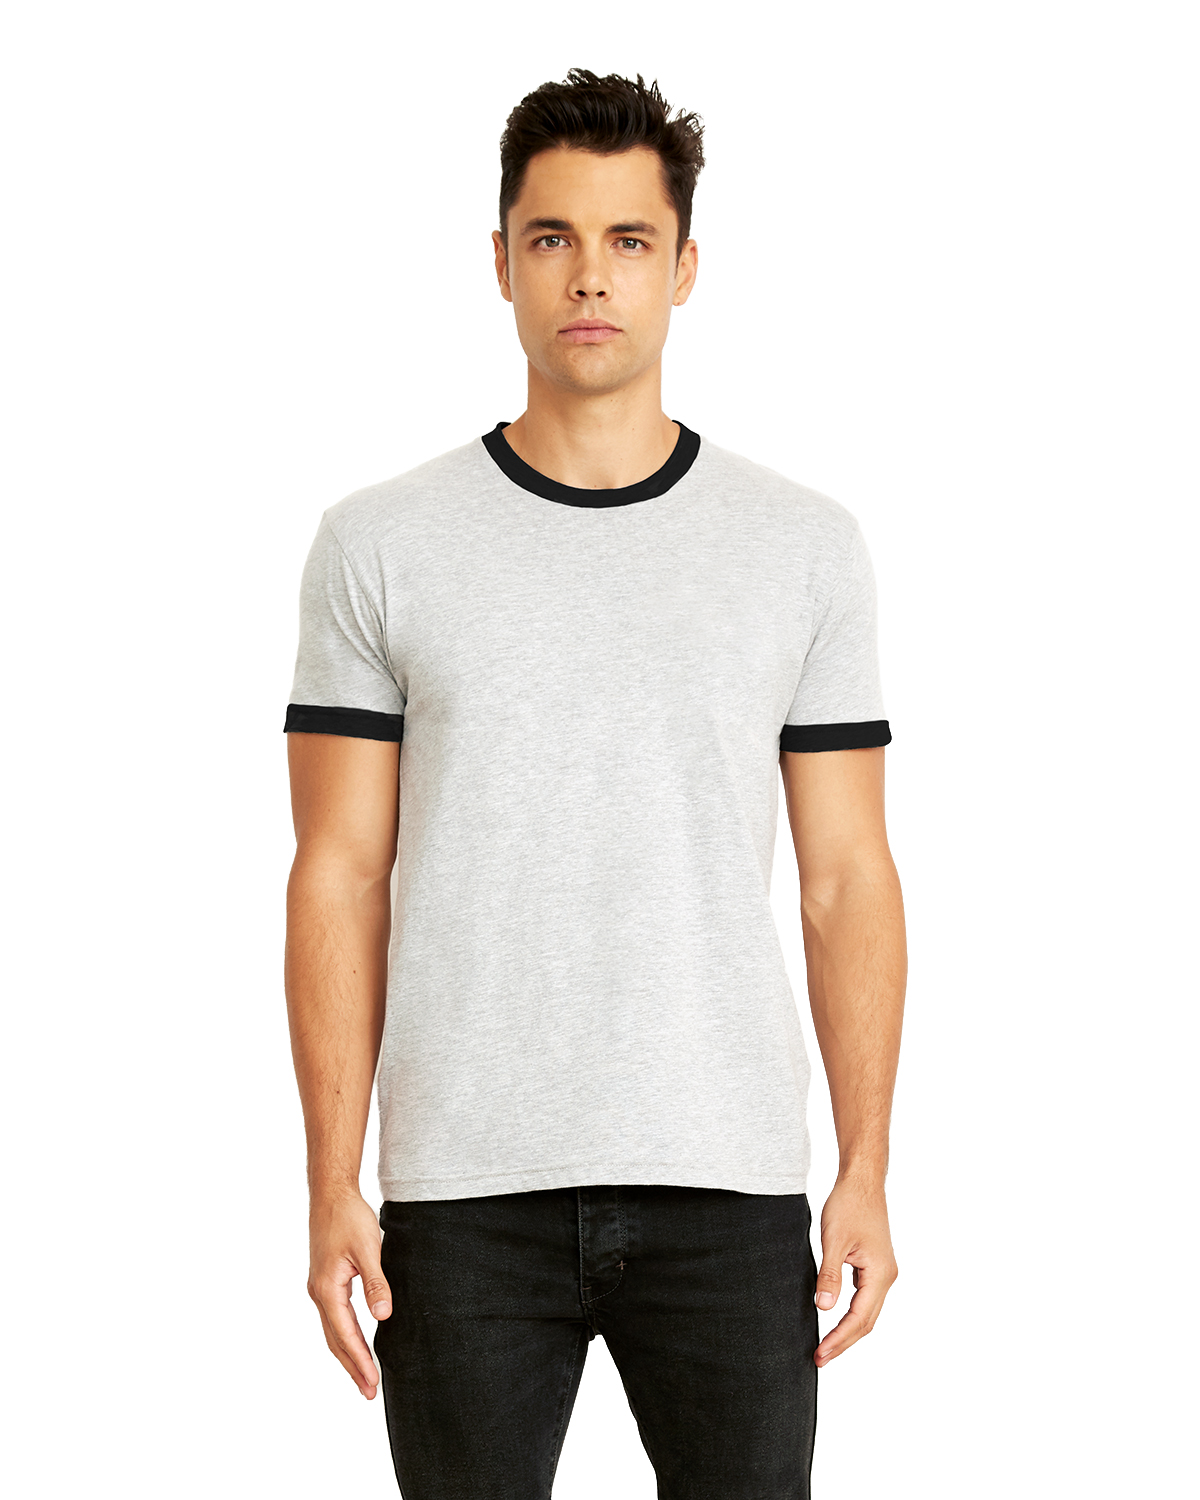 Next Level 3604 | Unisex Ringer T-Shirt | ShirtSpace